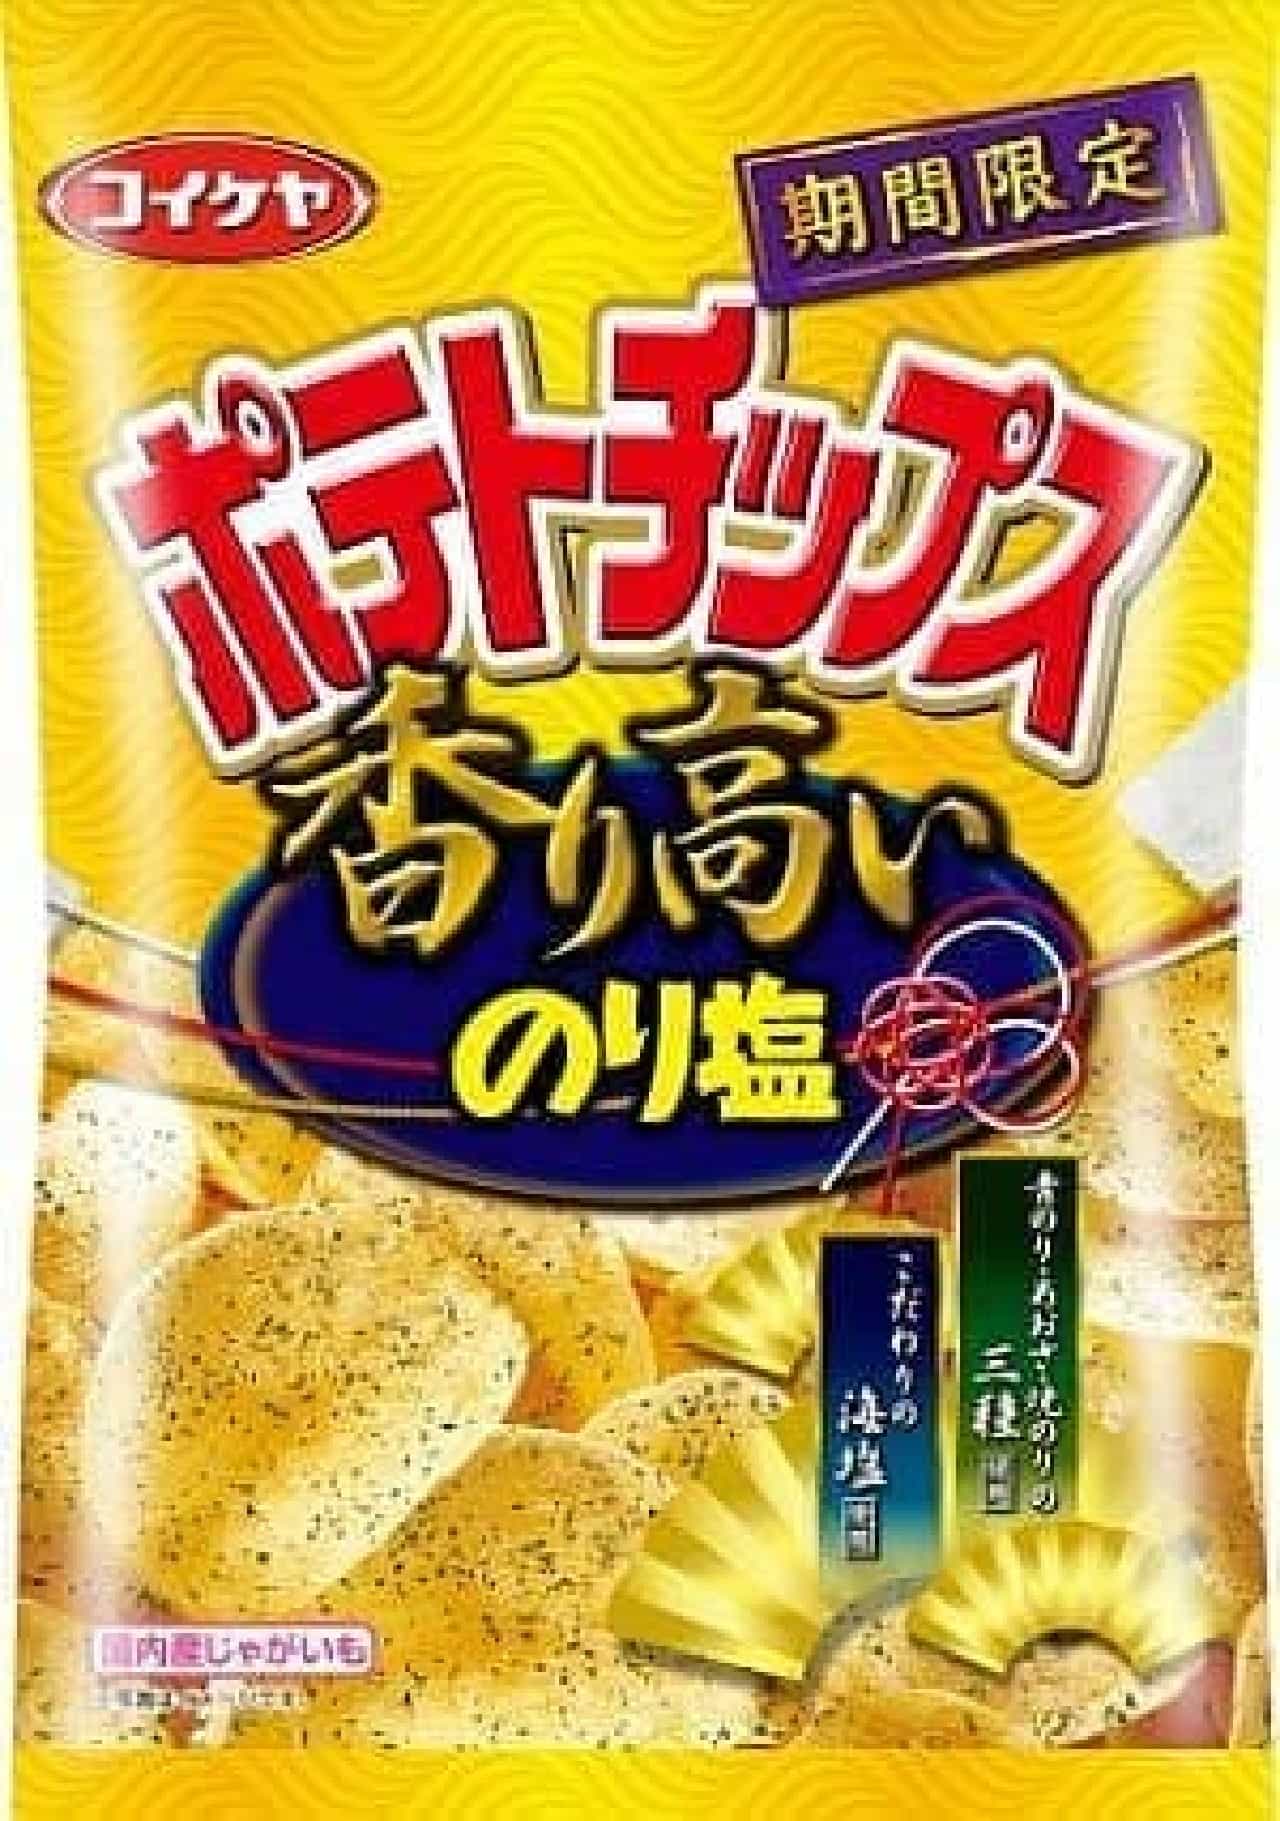 Koike-ya "Potato Chips Fragrant Nori Salt"